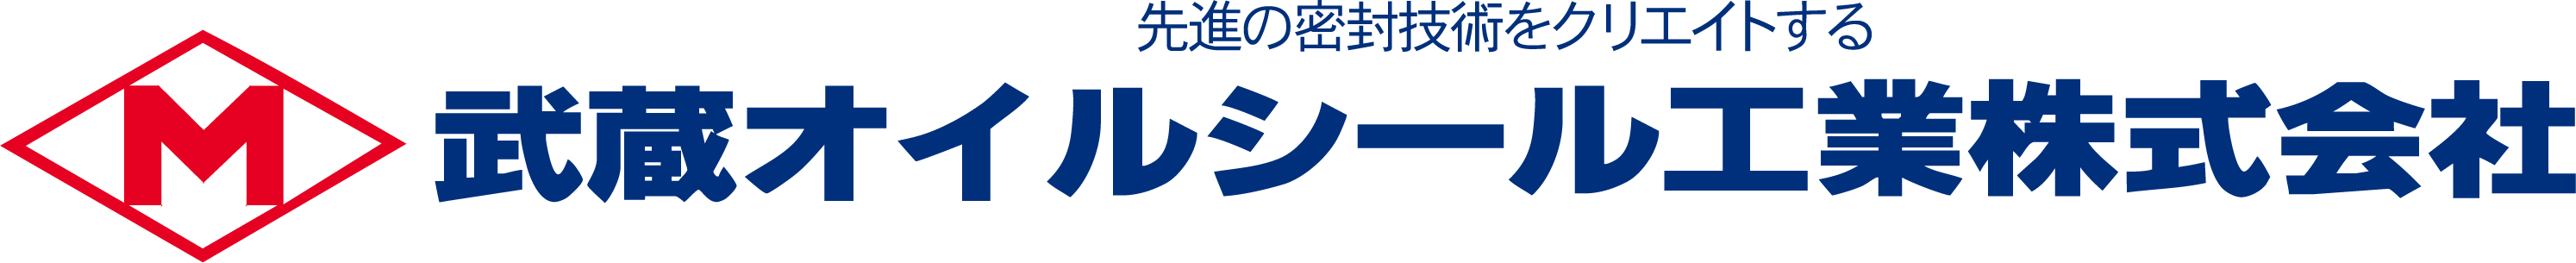 オイルシールキット - 武蔵オイルシール工業株式会社